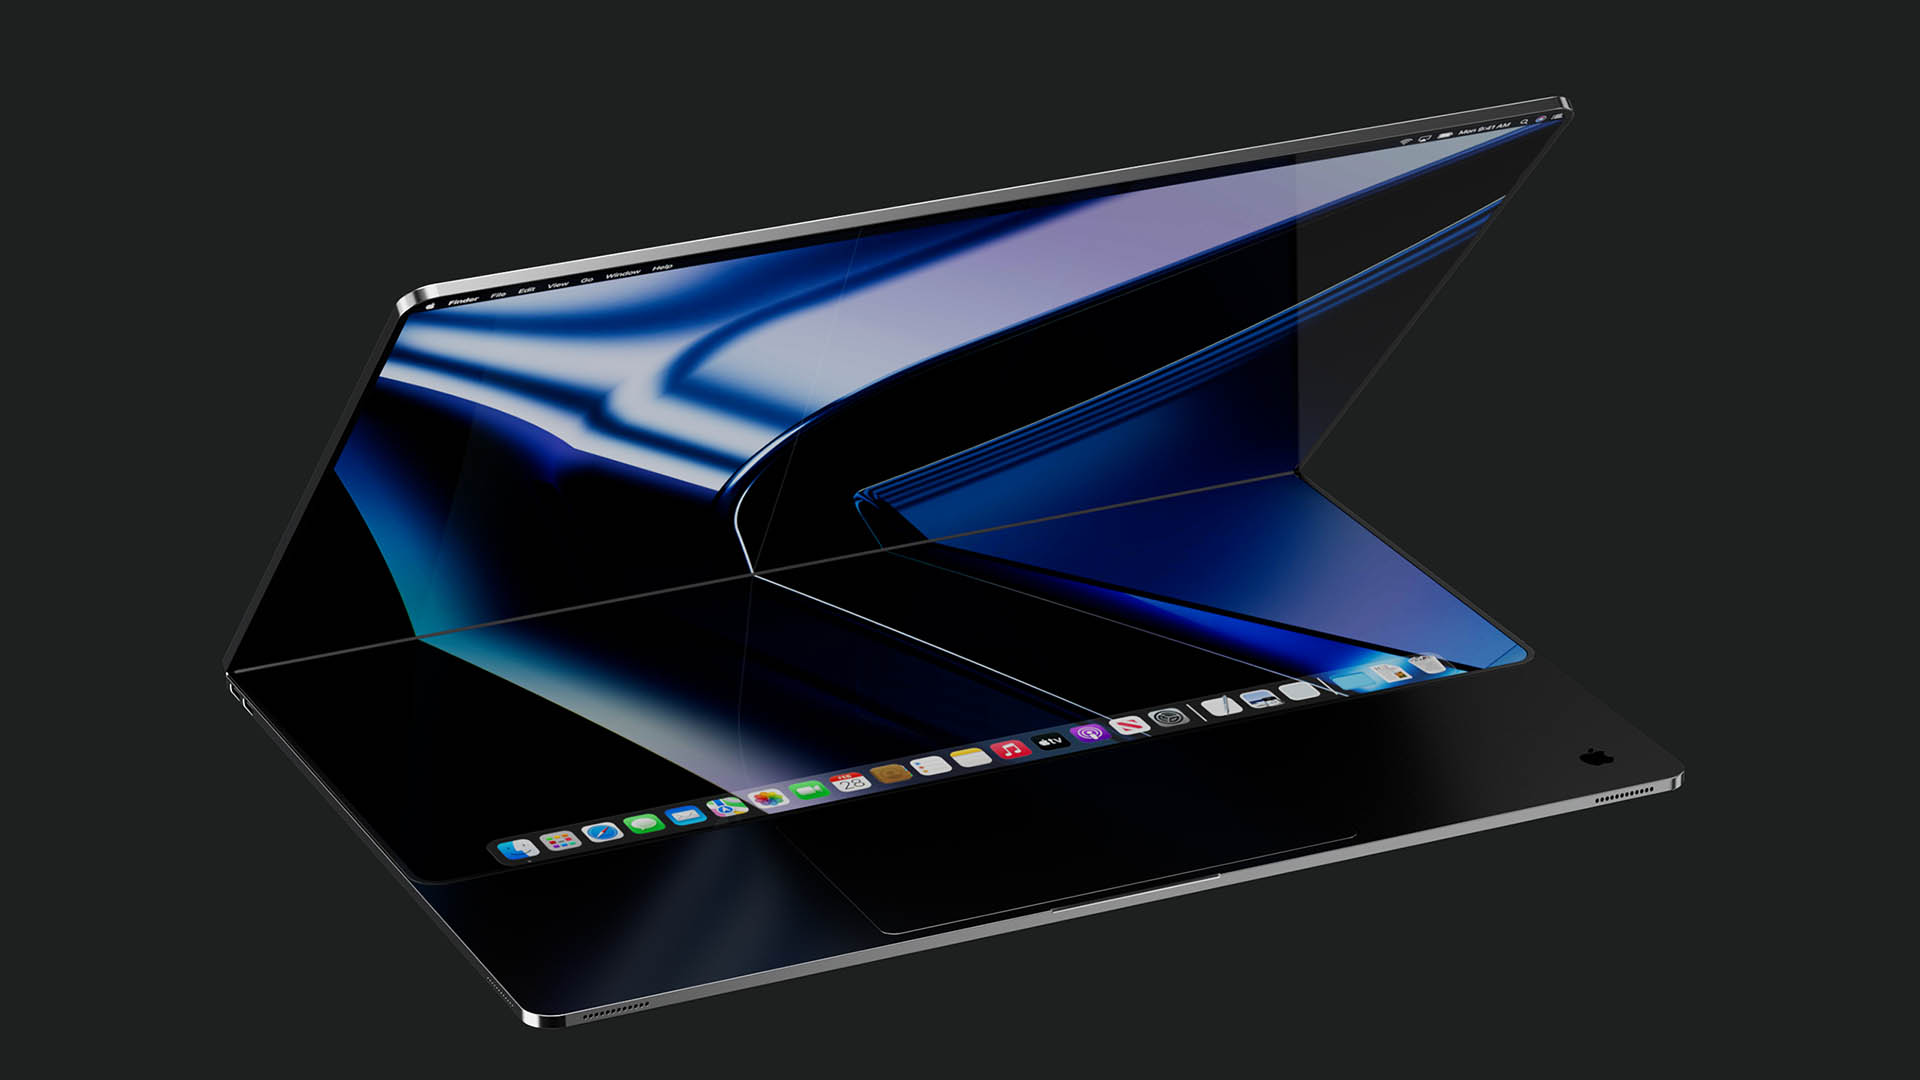 Apple и LG объединились для разработки гибкого экрана. Возможен вариант выхода новых iPad и MacBook